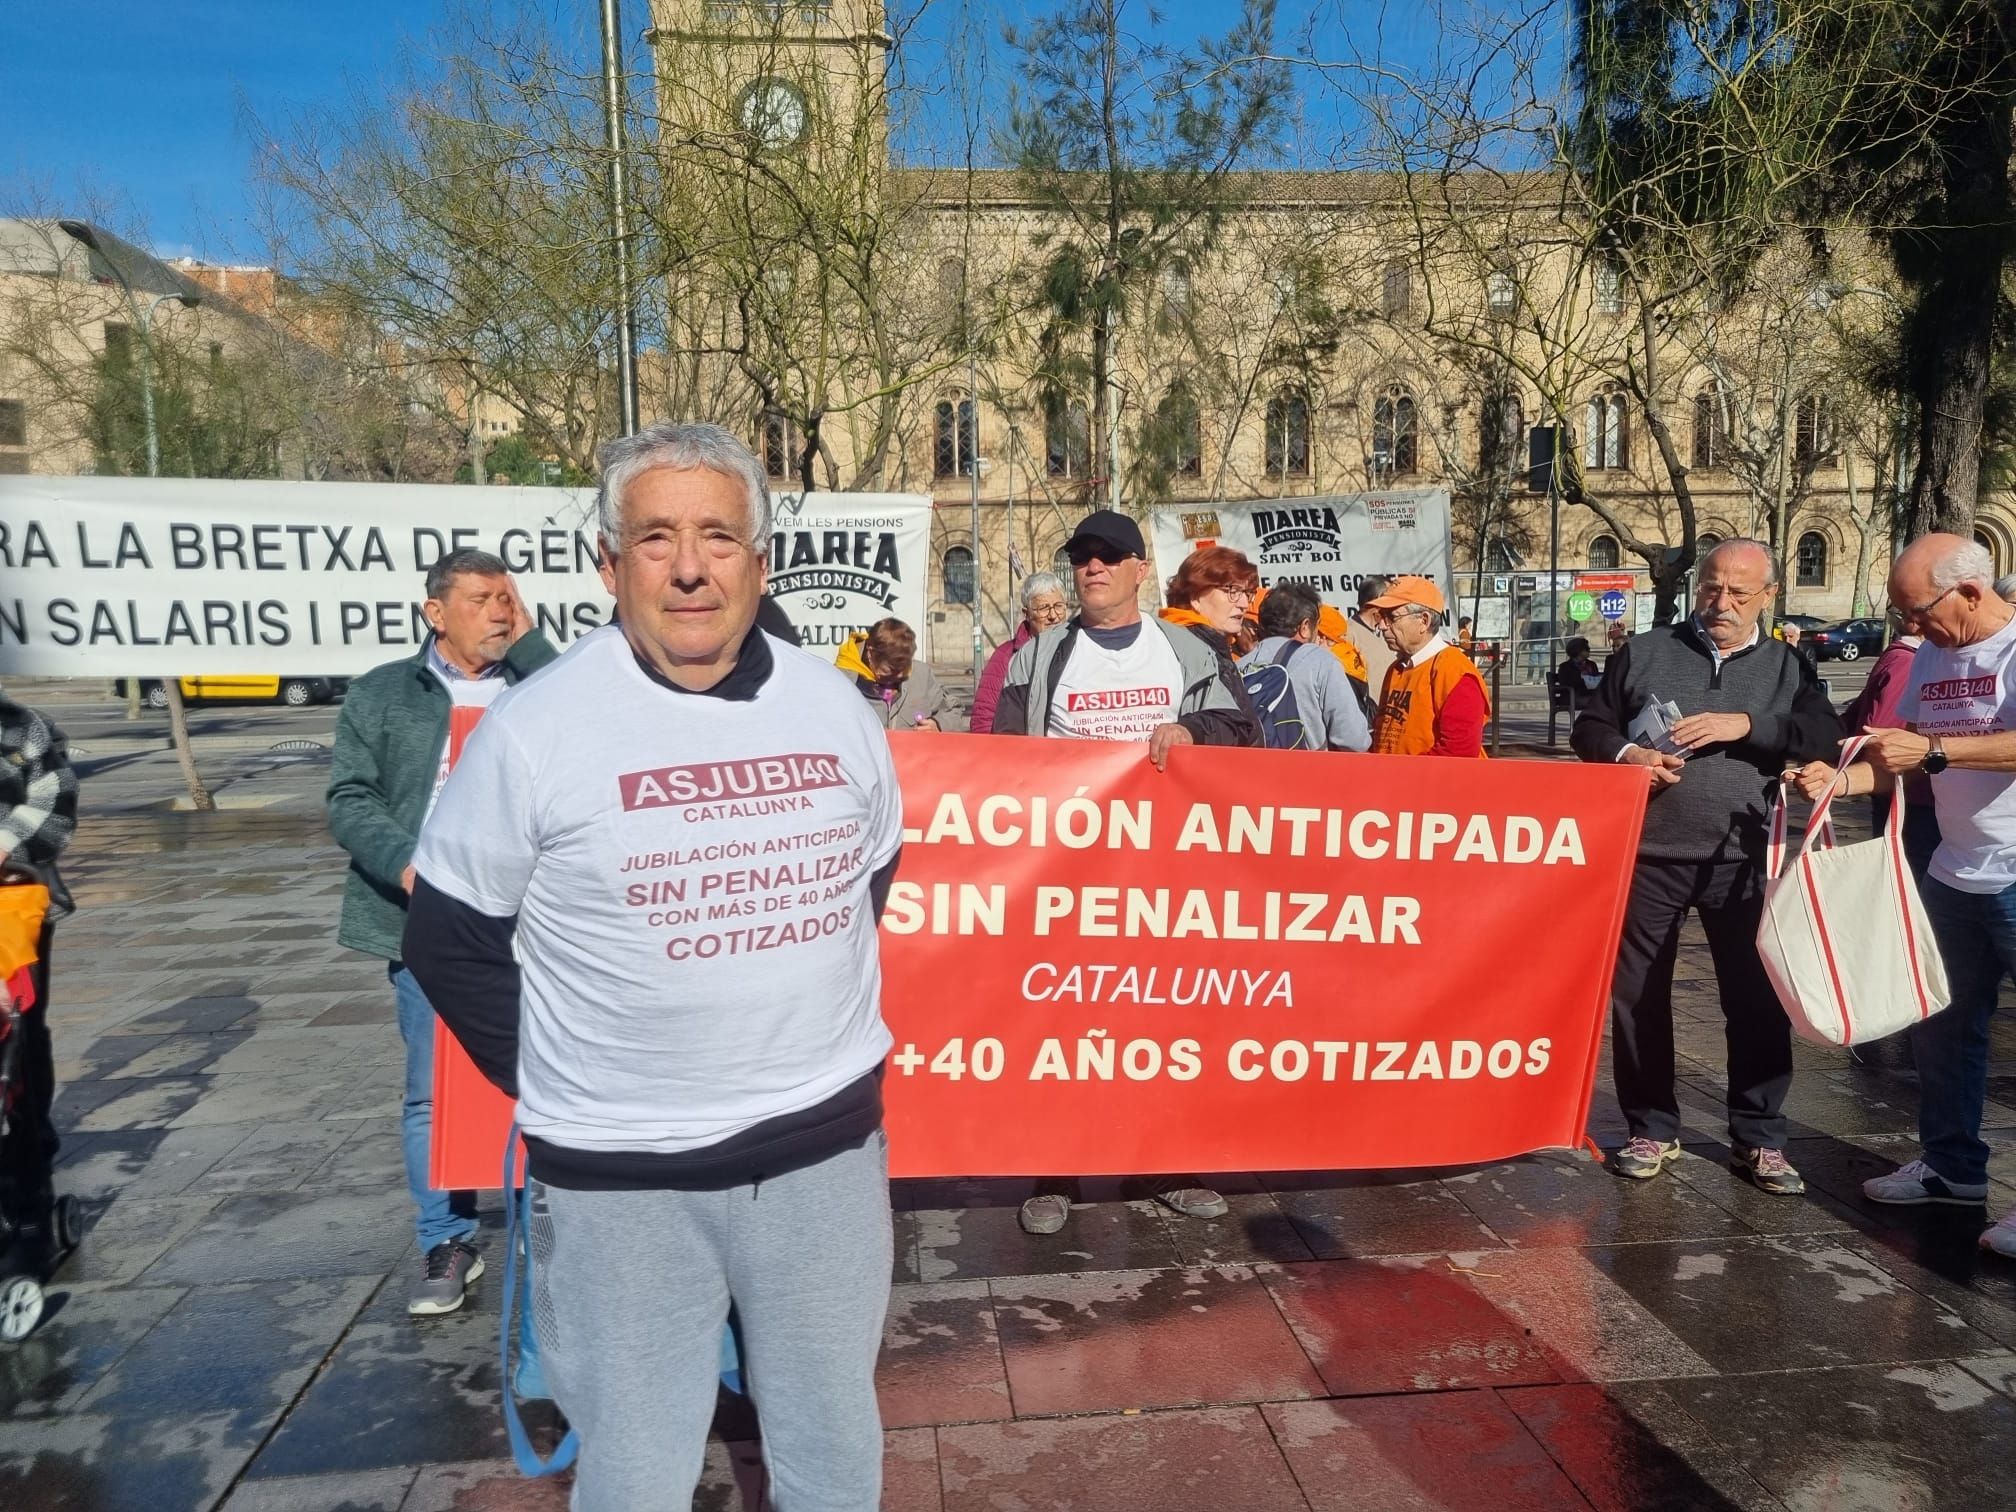 Isidoro Hernández: “Me jubilé de autónomo y me quitan un 32% de pensión. Me han arruinado la vida”